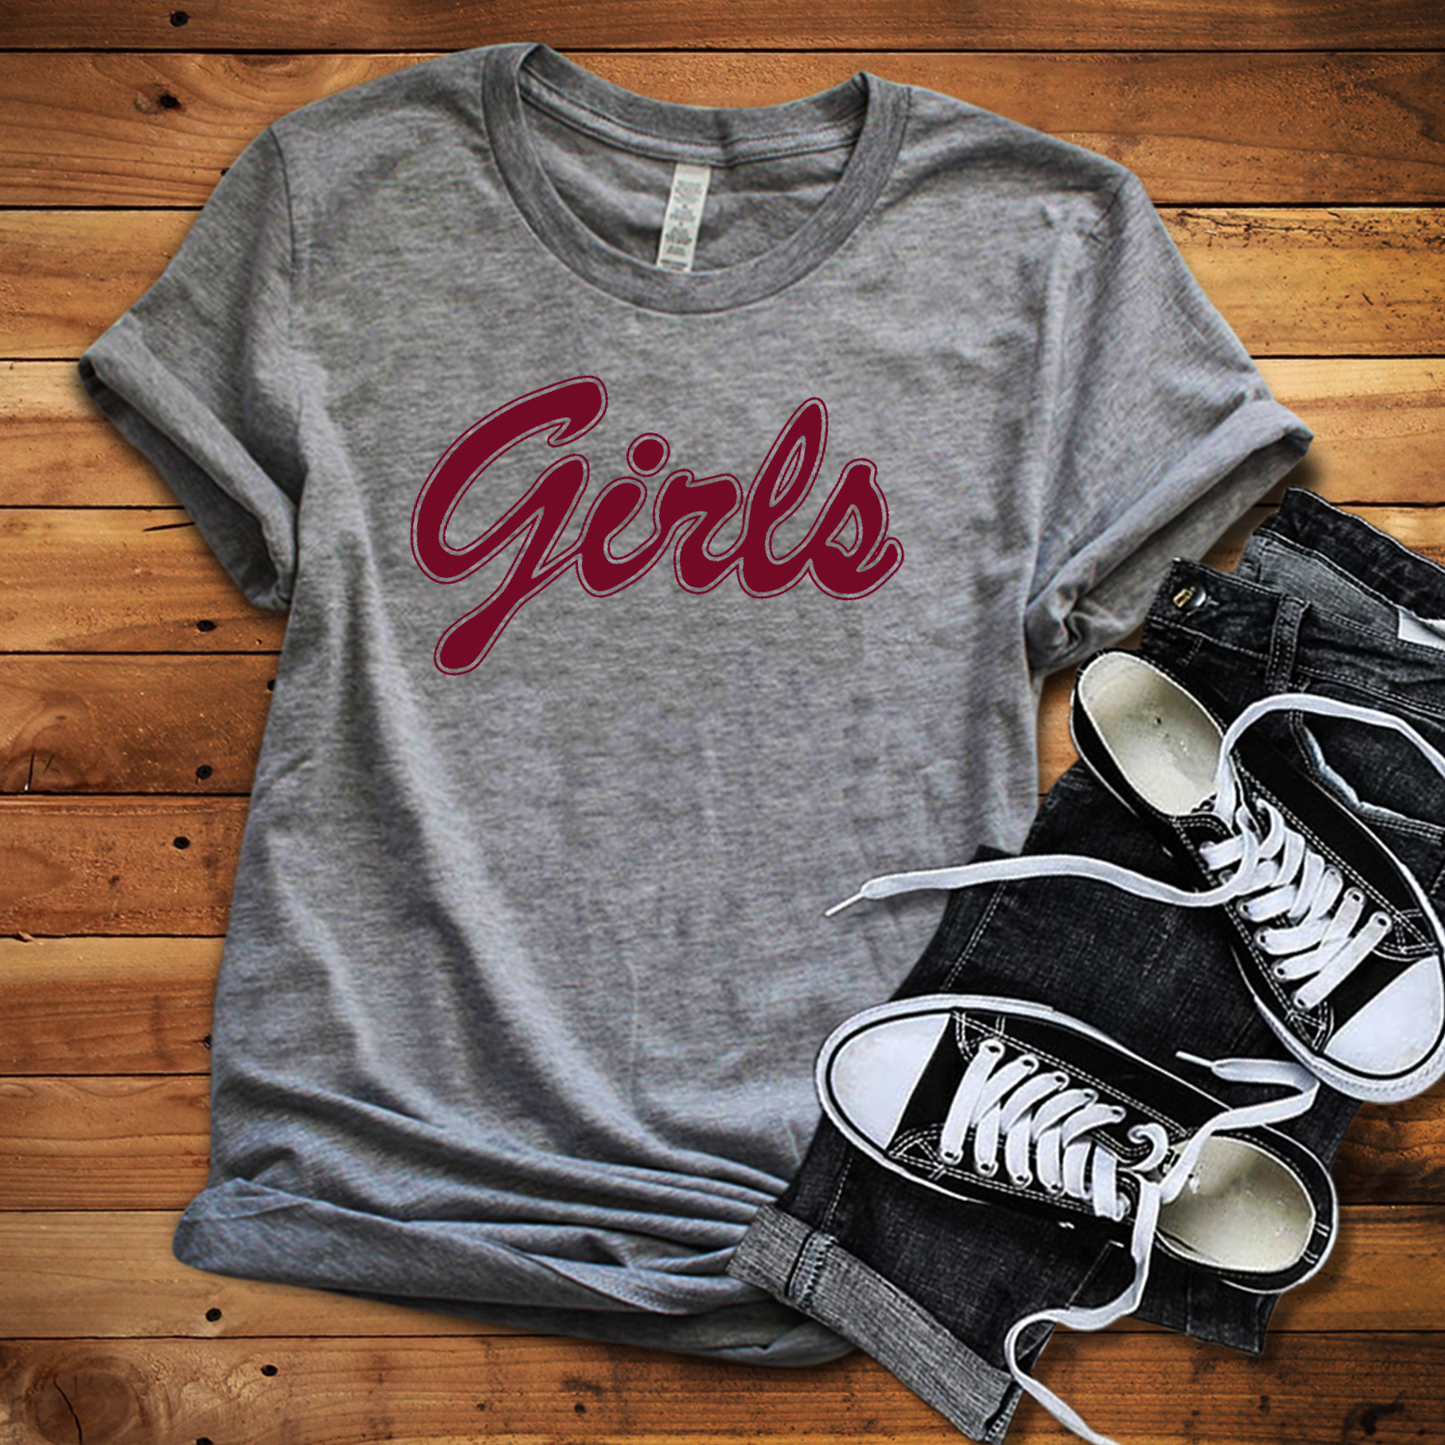 FRIENDS - Girls Slogan t-shirt